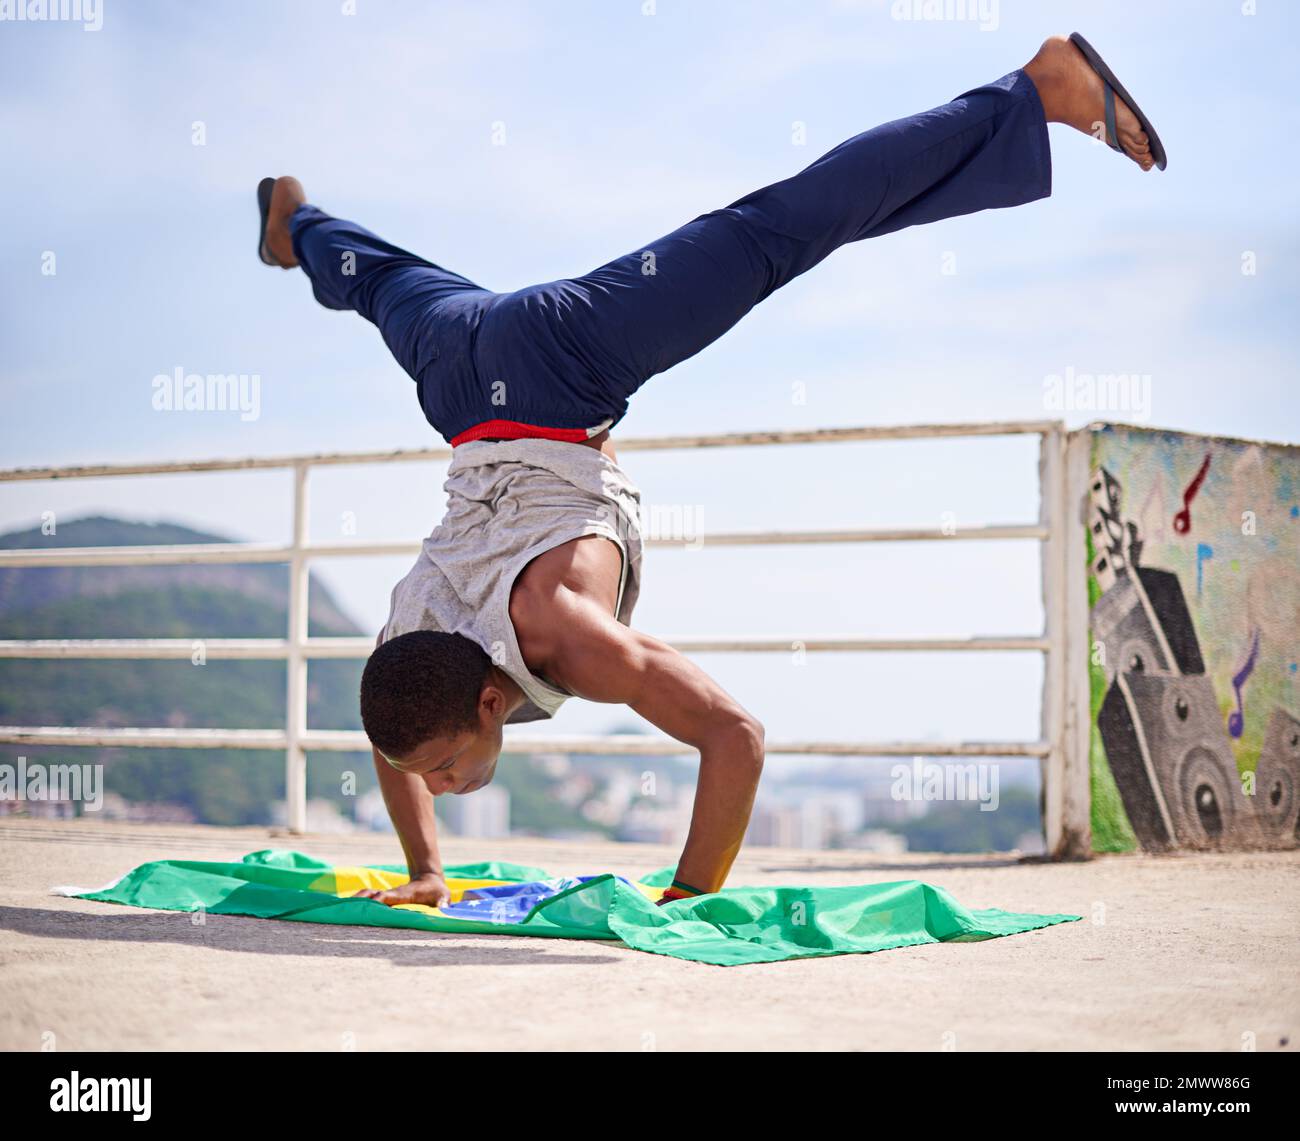 Mostrare la sua abilità. Inquadratura ad angolo basso di un giovane breakdancer maschile in un ambiente urbano. Foto Stock